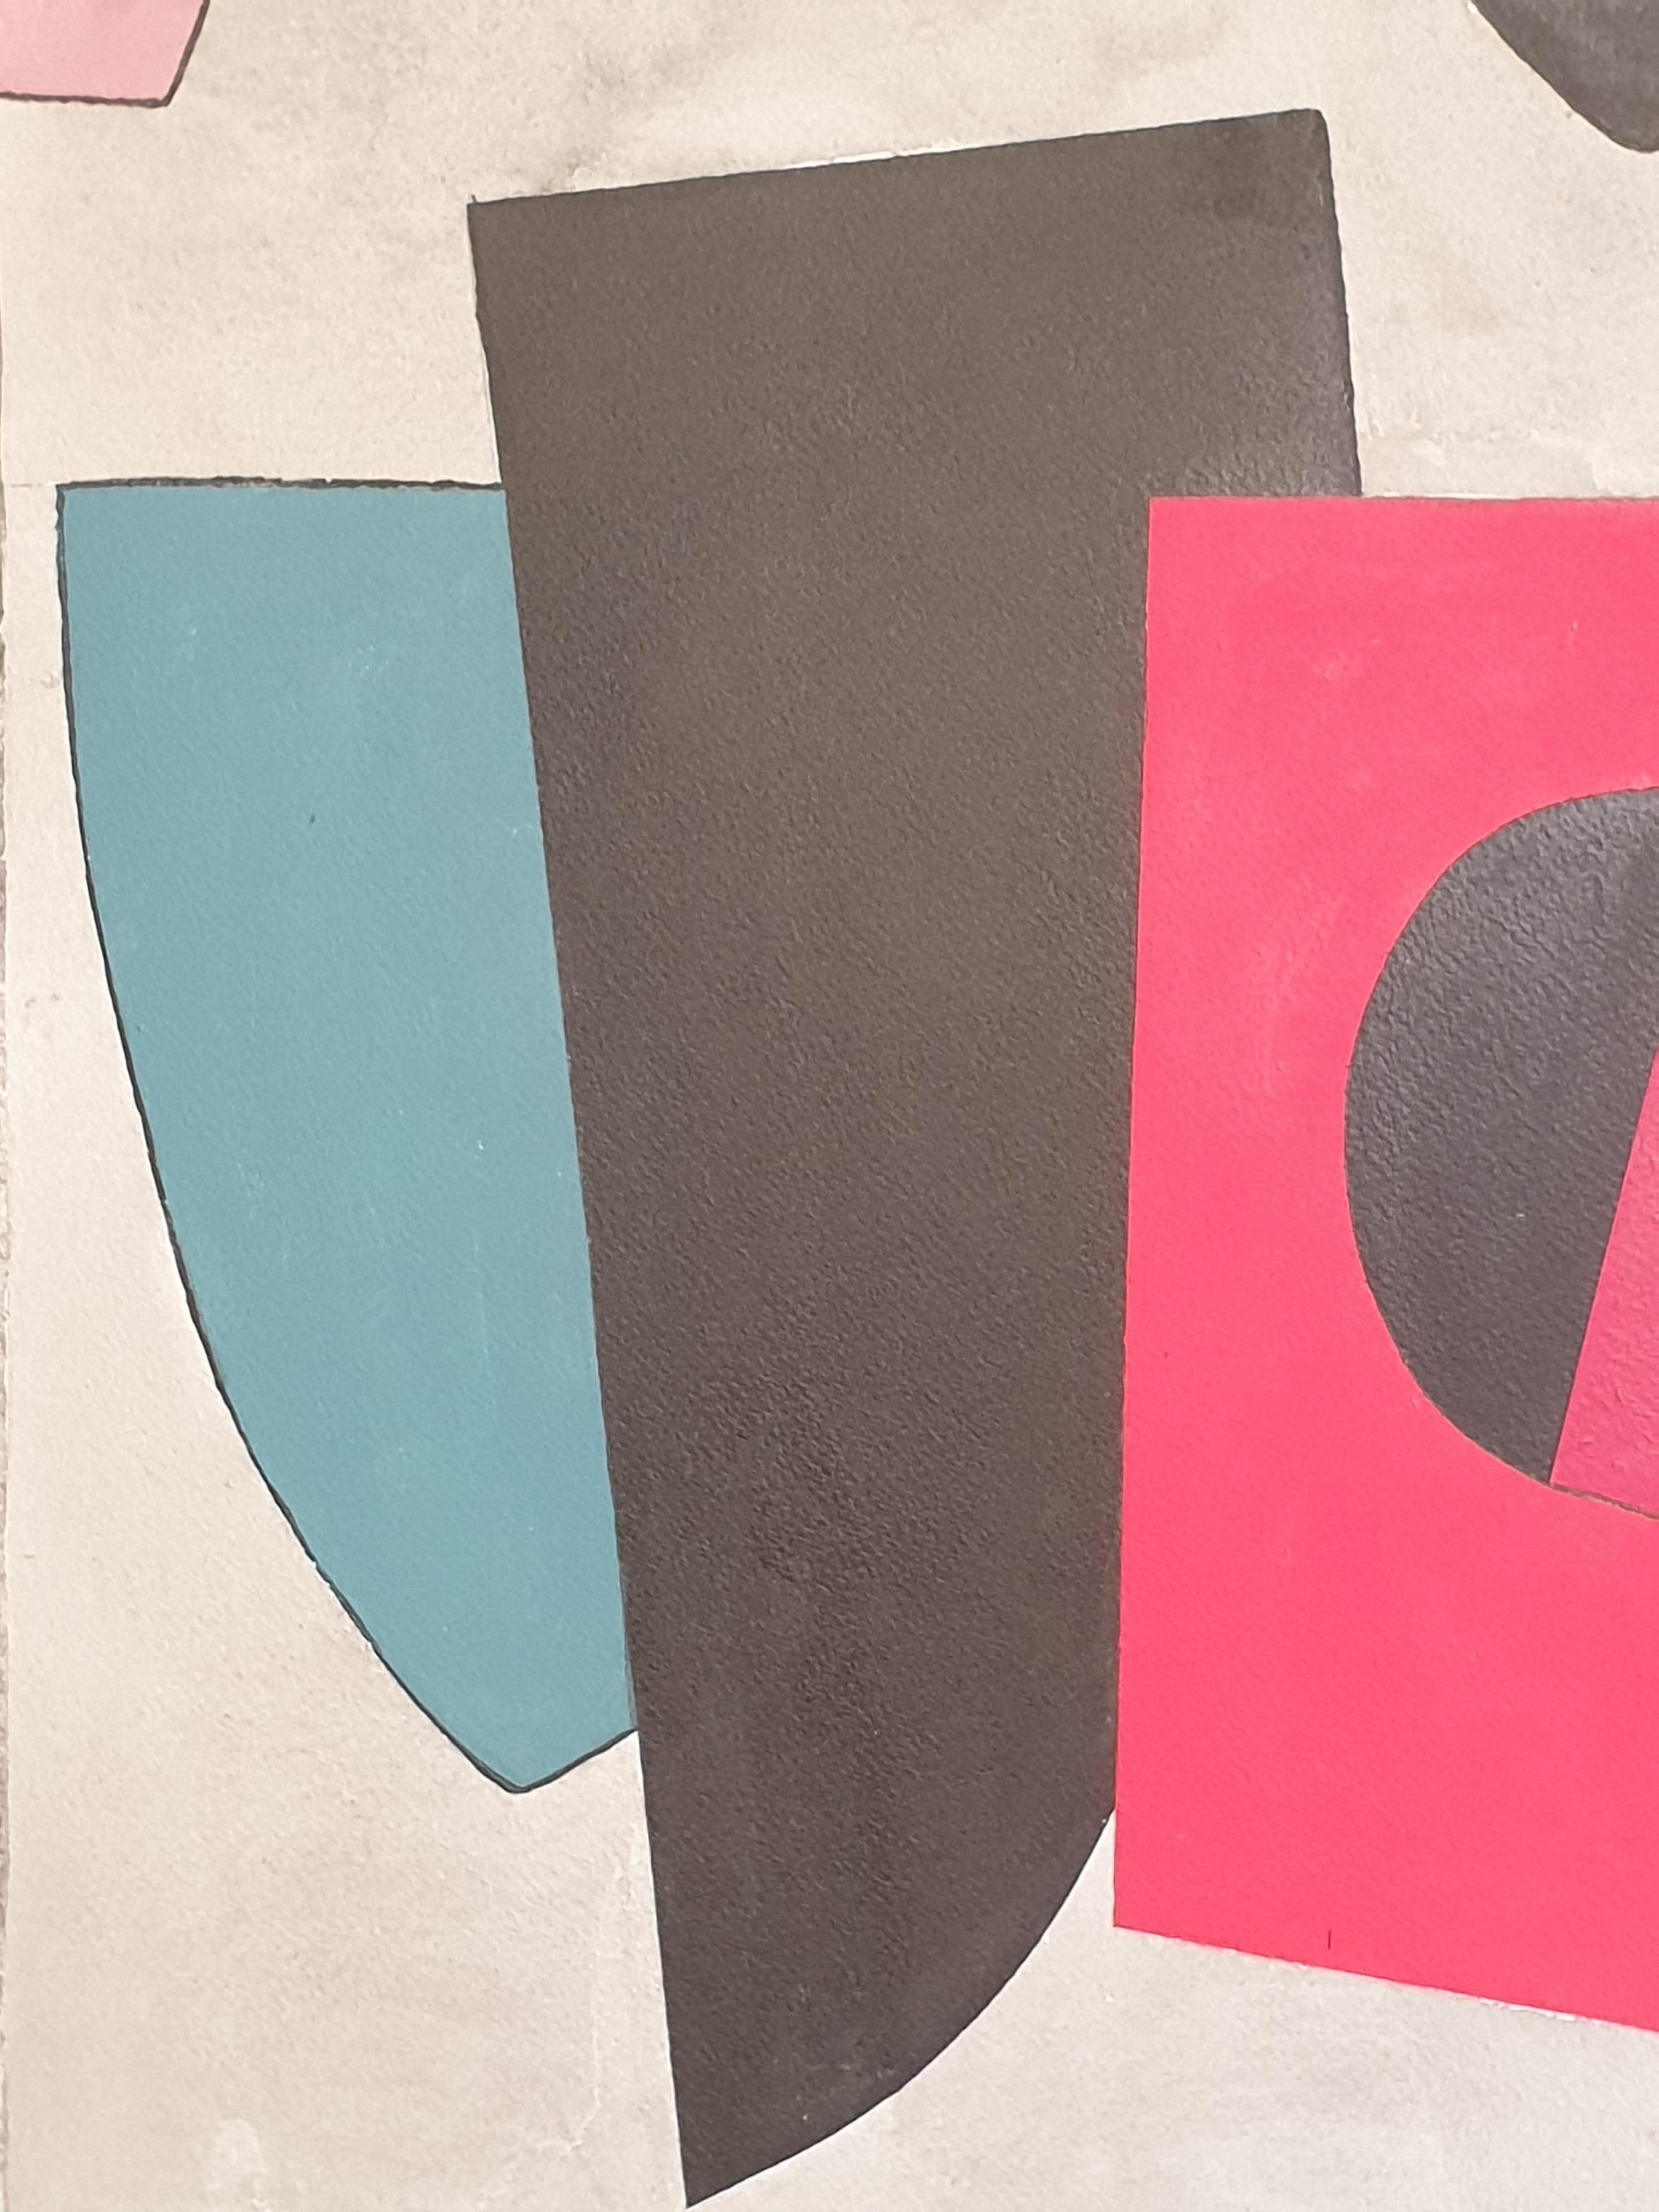 Acrylique géométrique abstraite sur papier de la fin du 20e siècle de l'artiste britannique Derek Carruthers. Signé en bas à droite et signé et daté au verso.

Une juxtaposition merveilleusement colorée et vivante de diverses formes géométriques,